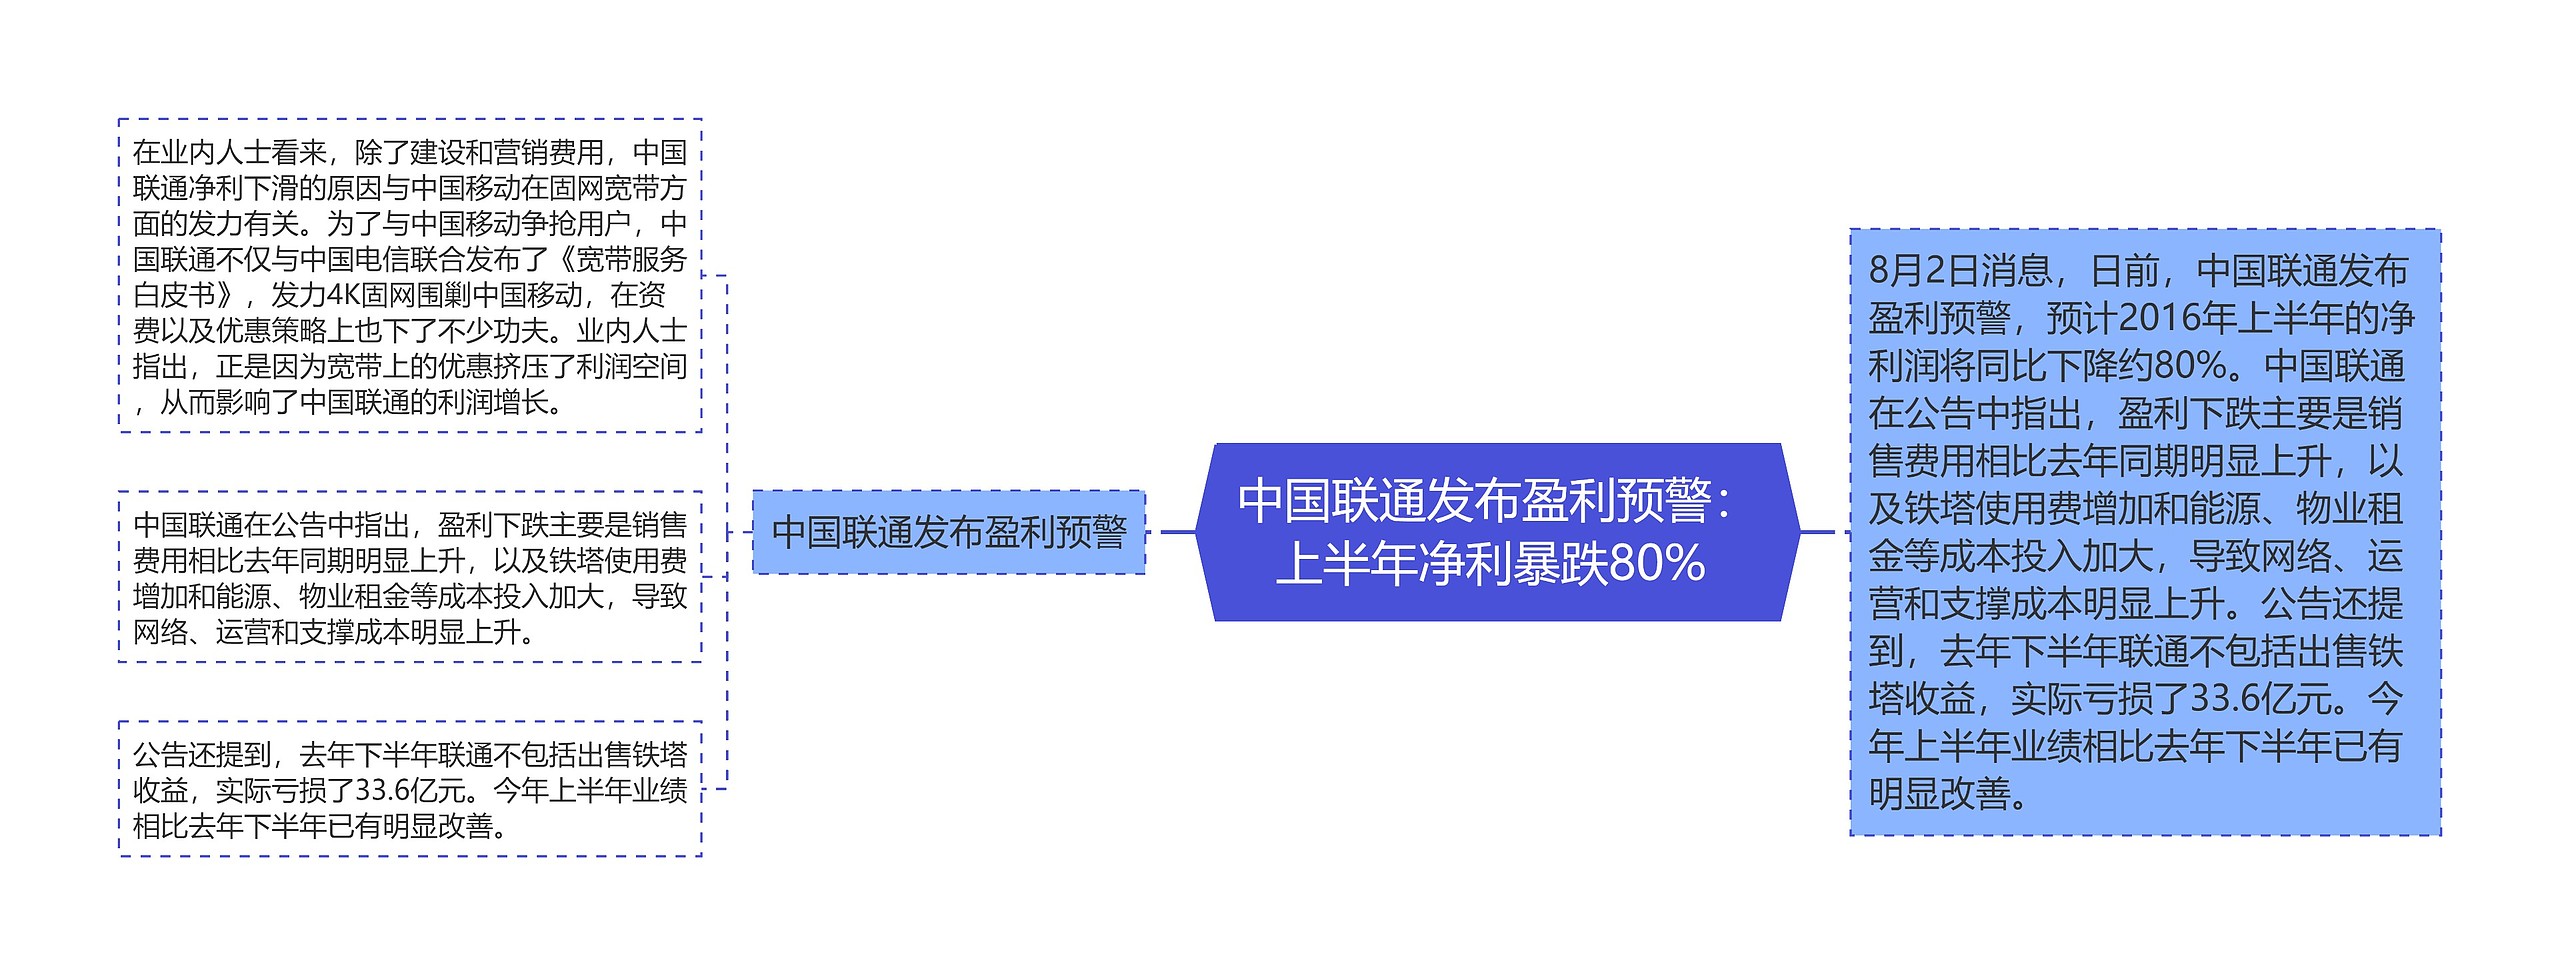 中国联通发布盈利预警：上半年净利暴跌80% 